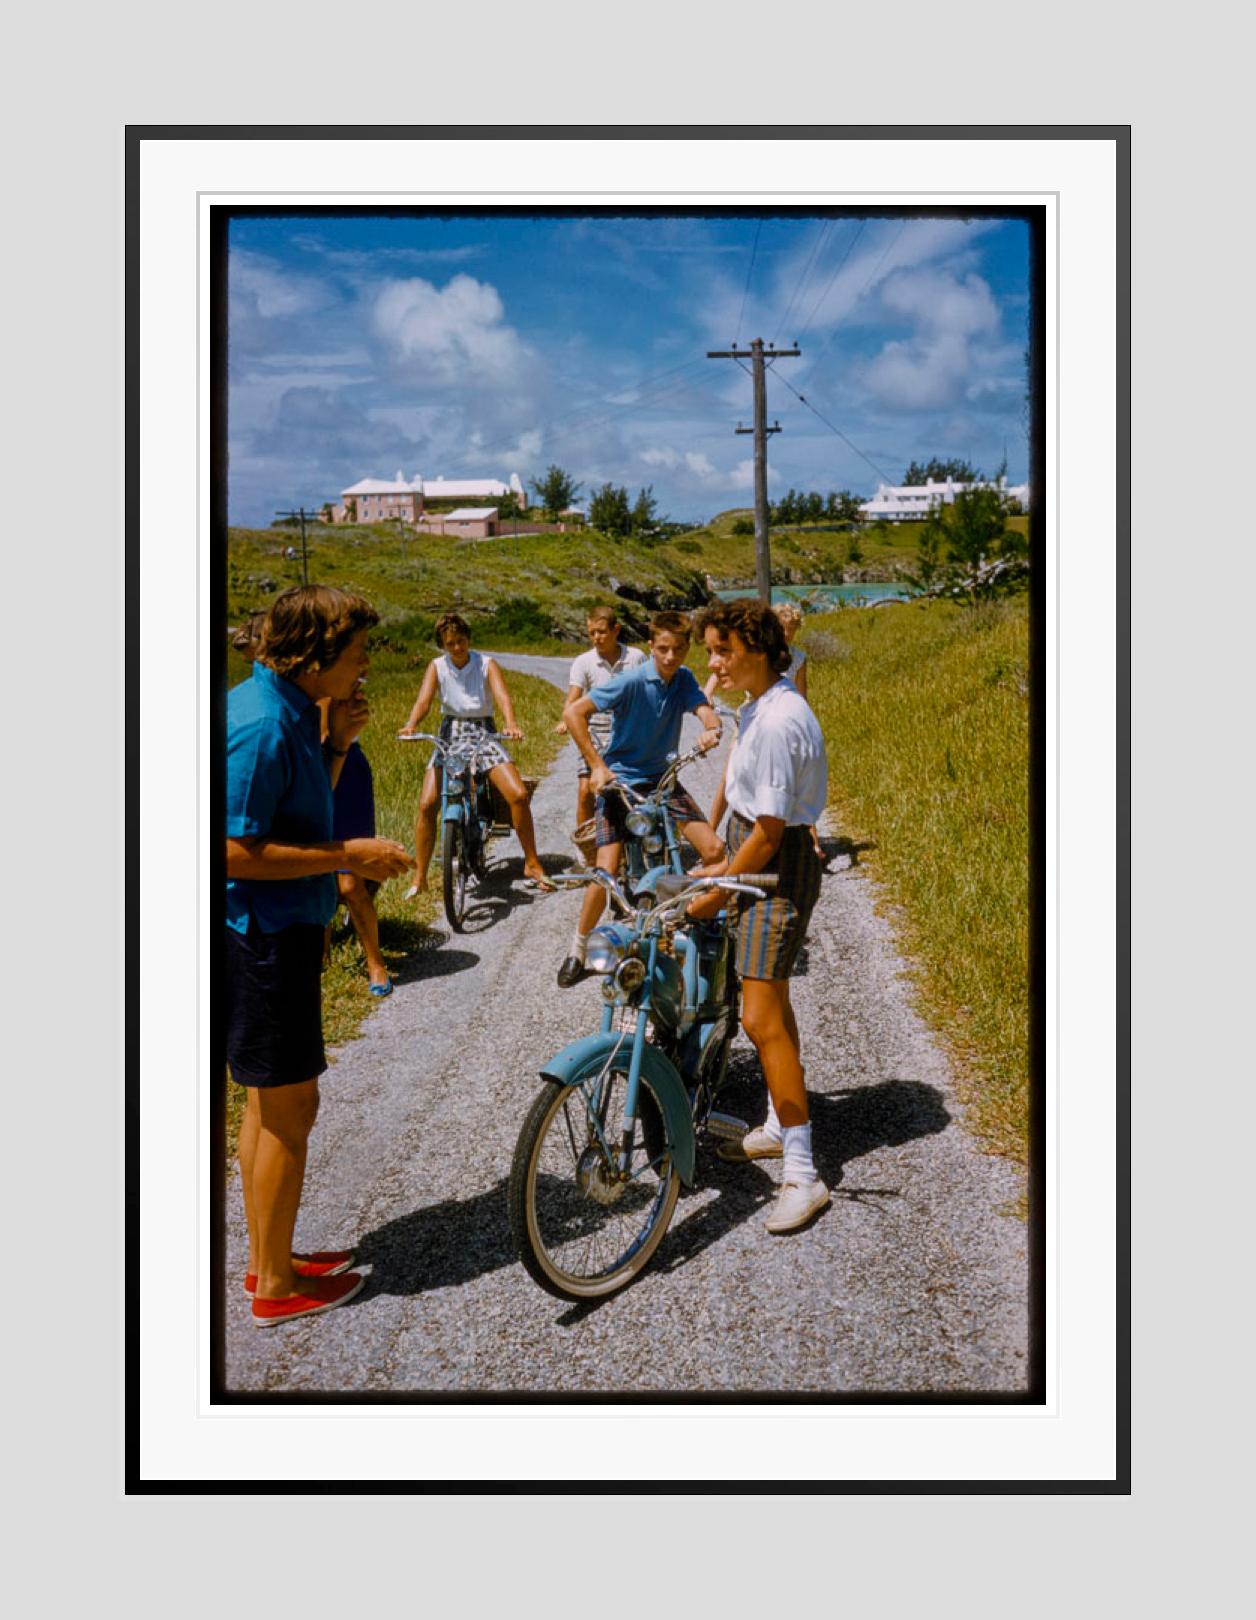 Eine Fahrradtour auf den Bermudas

 1960
Eine Fahrradtour auf den Bermudas, 1960. 

von Toni Frissell

48 x 72